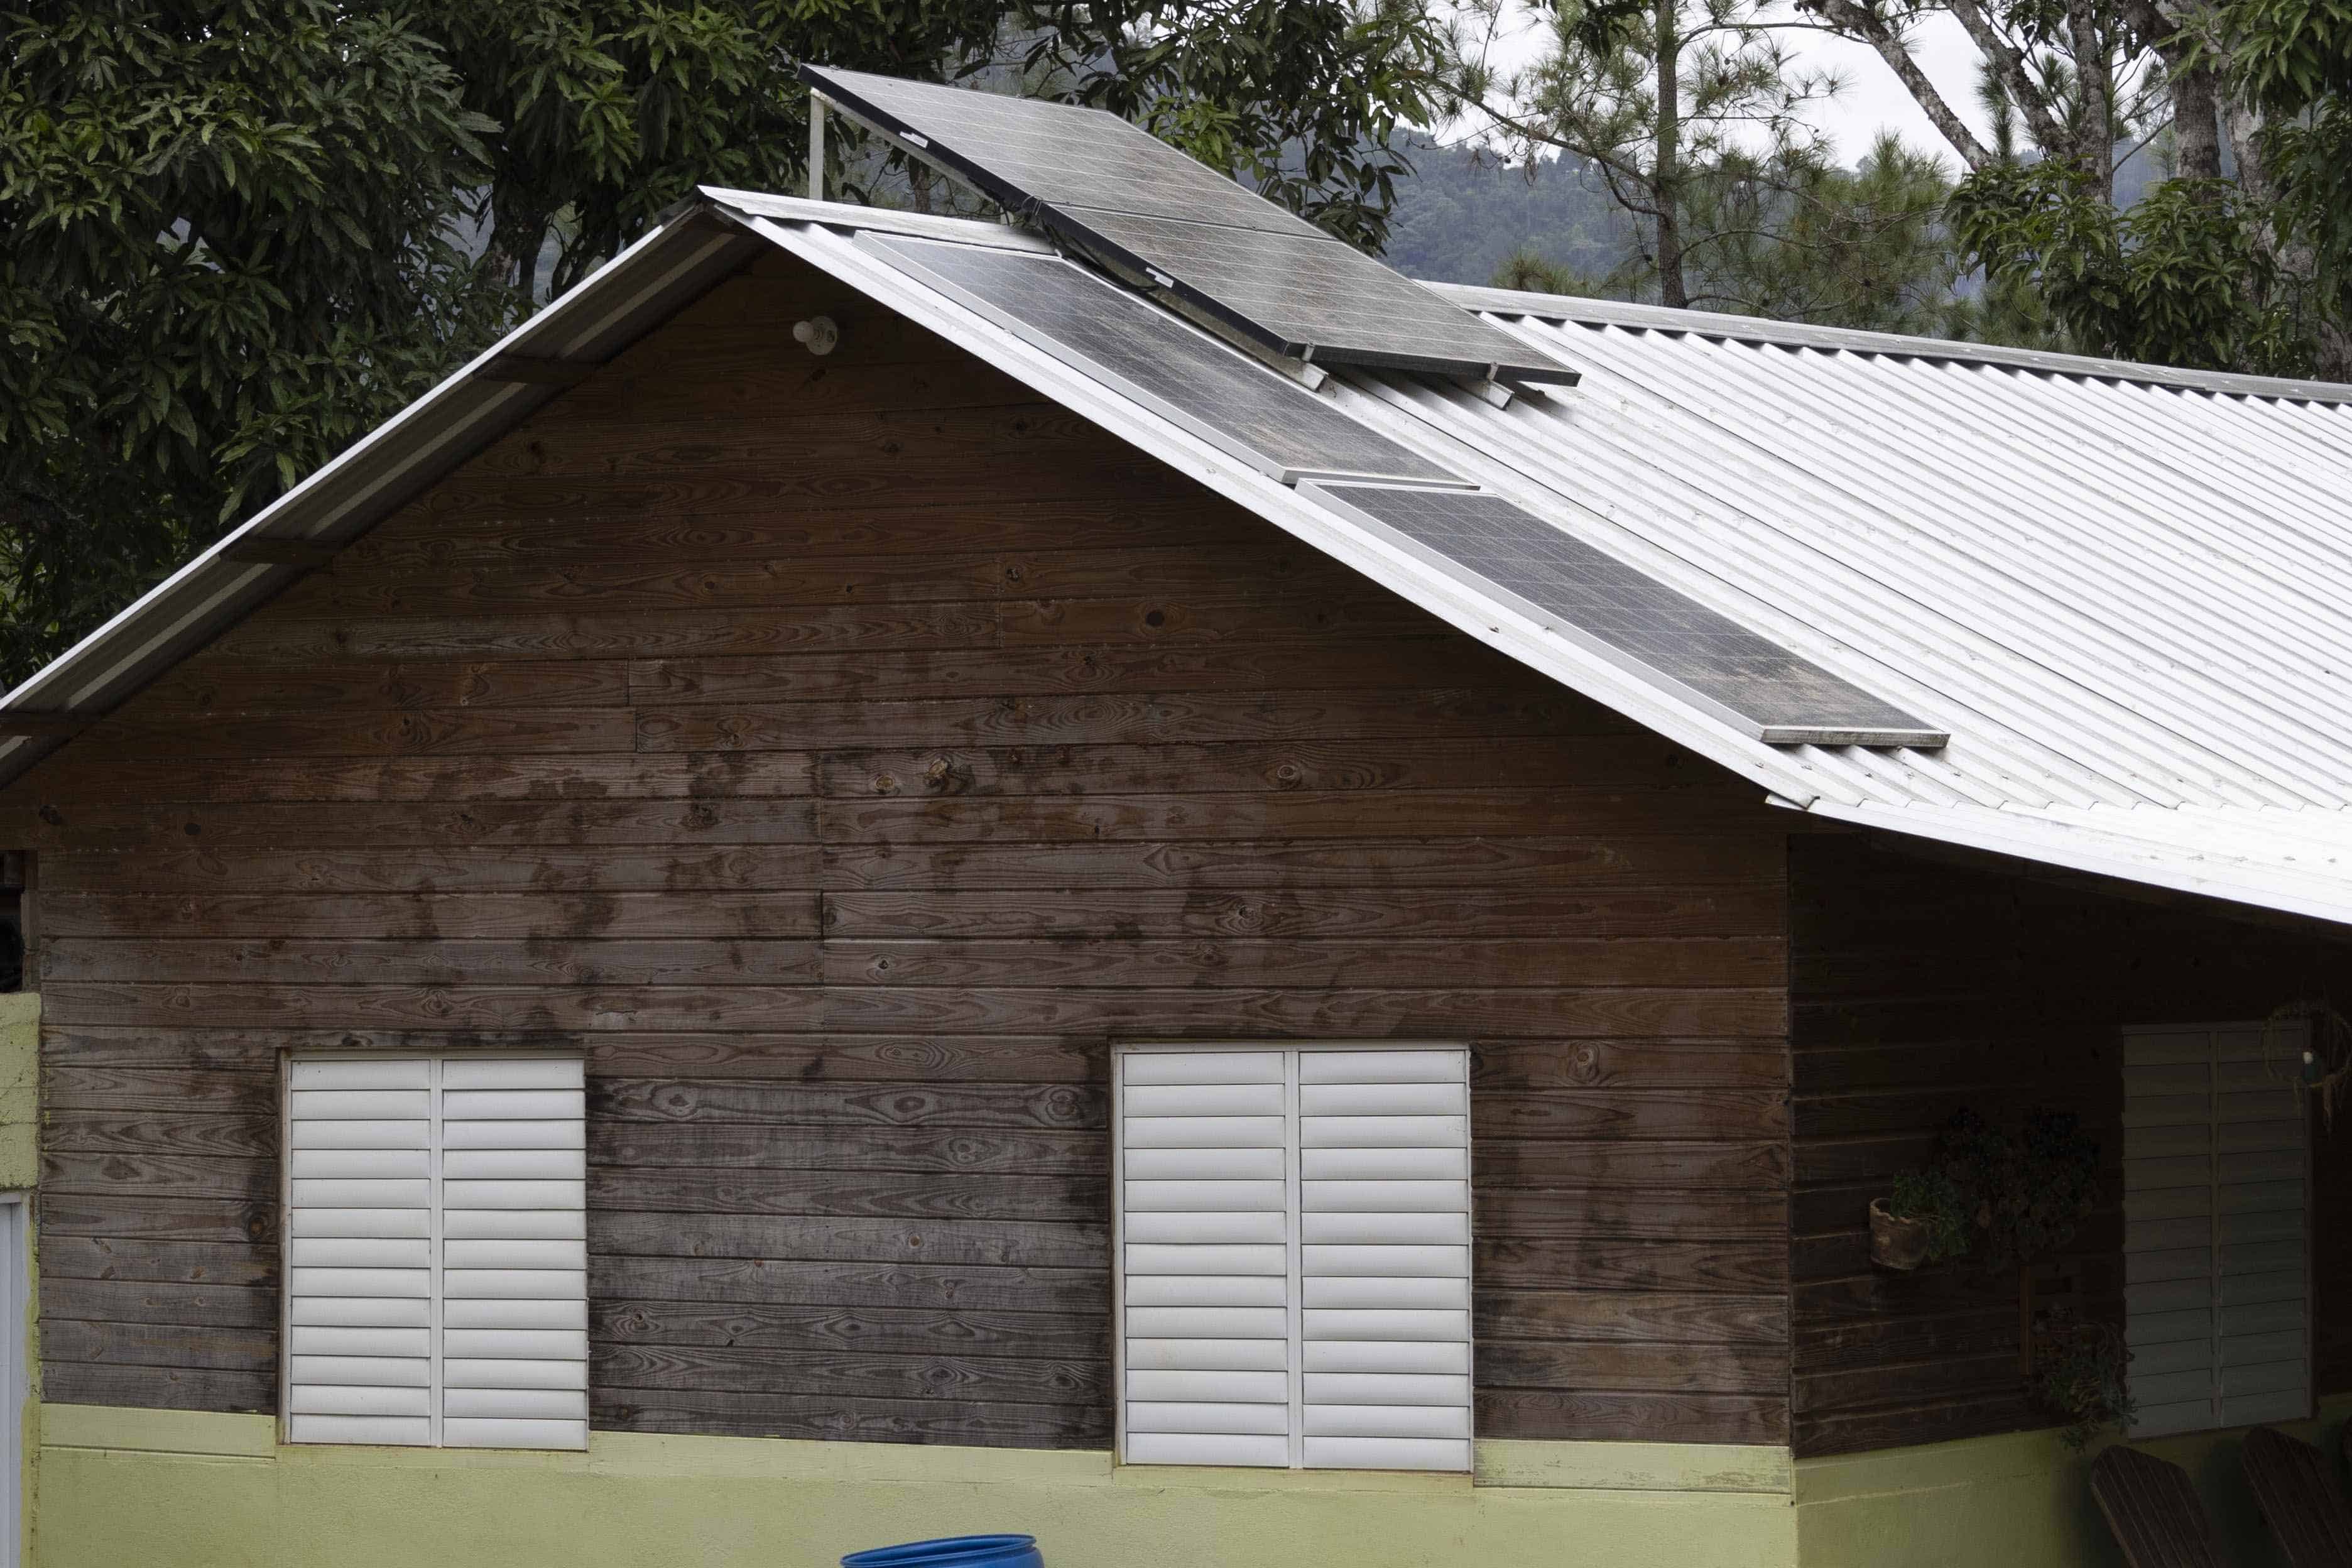 La instalación de un sistema fotovoltaico podría costar RD$100,00 pesos.